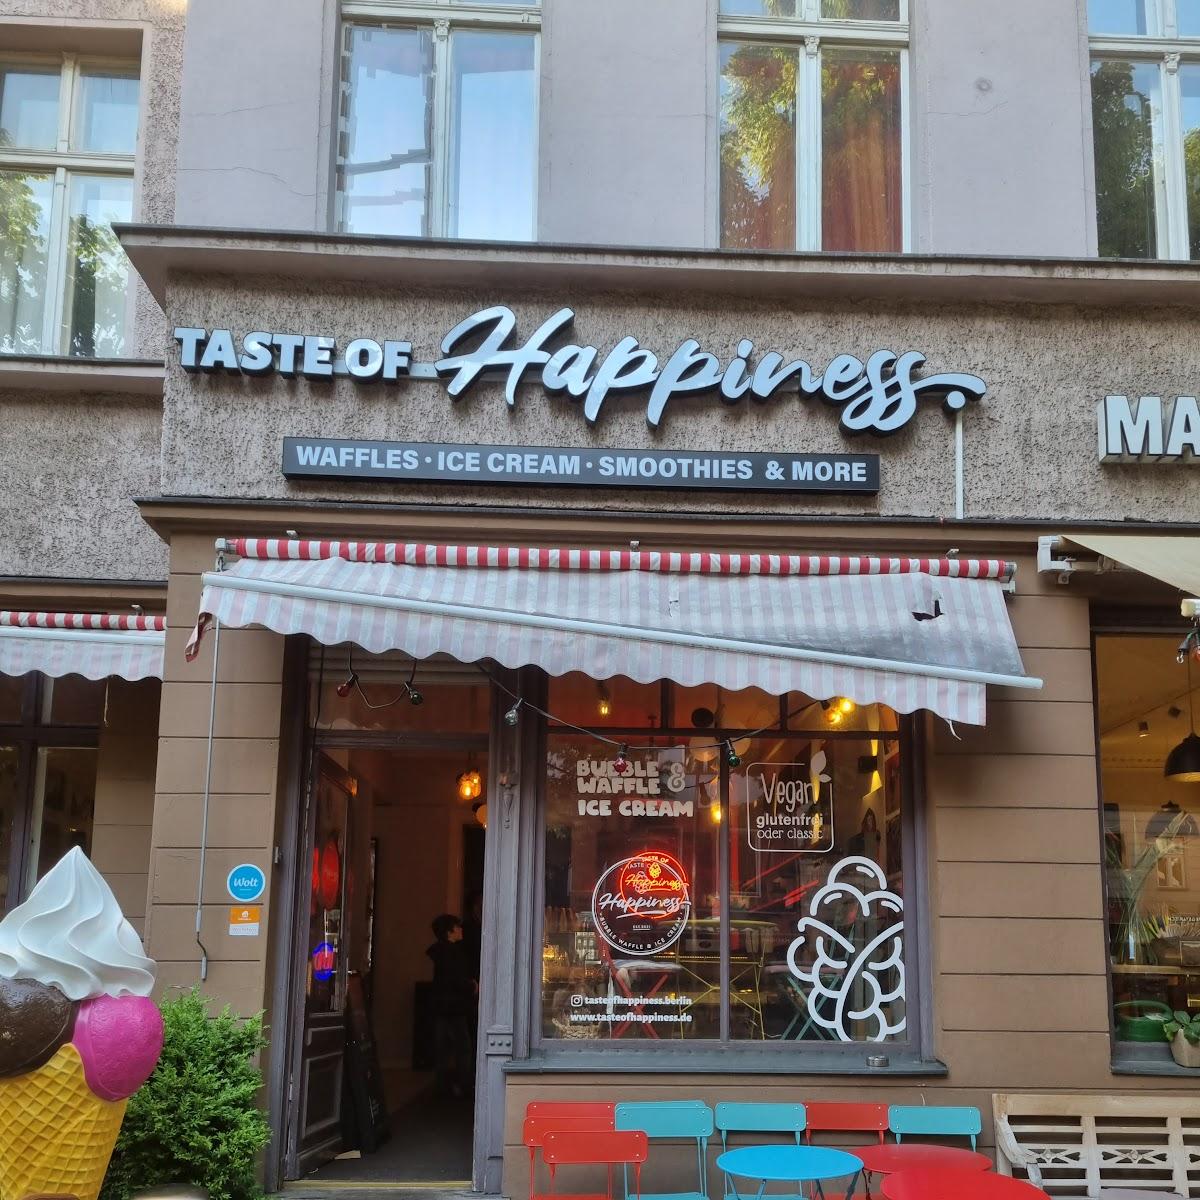 Restaurant "Taste of Happiness" in Berlin